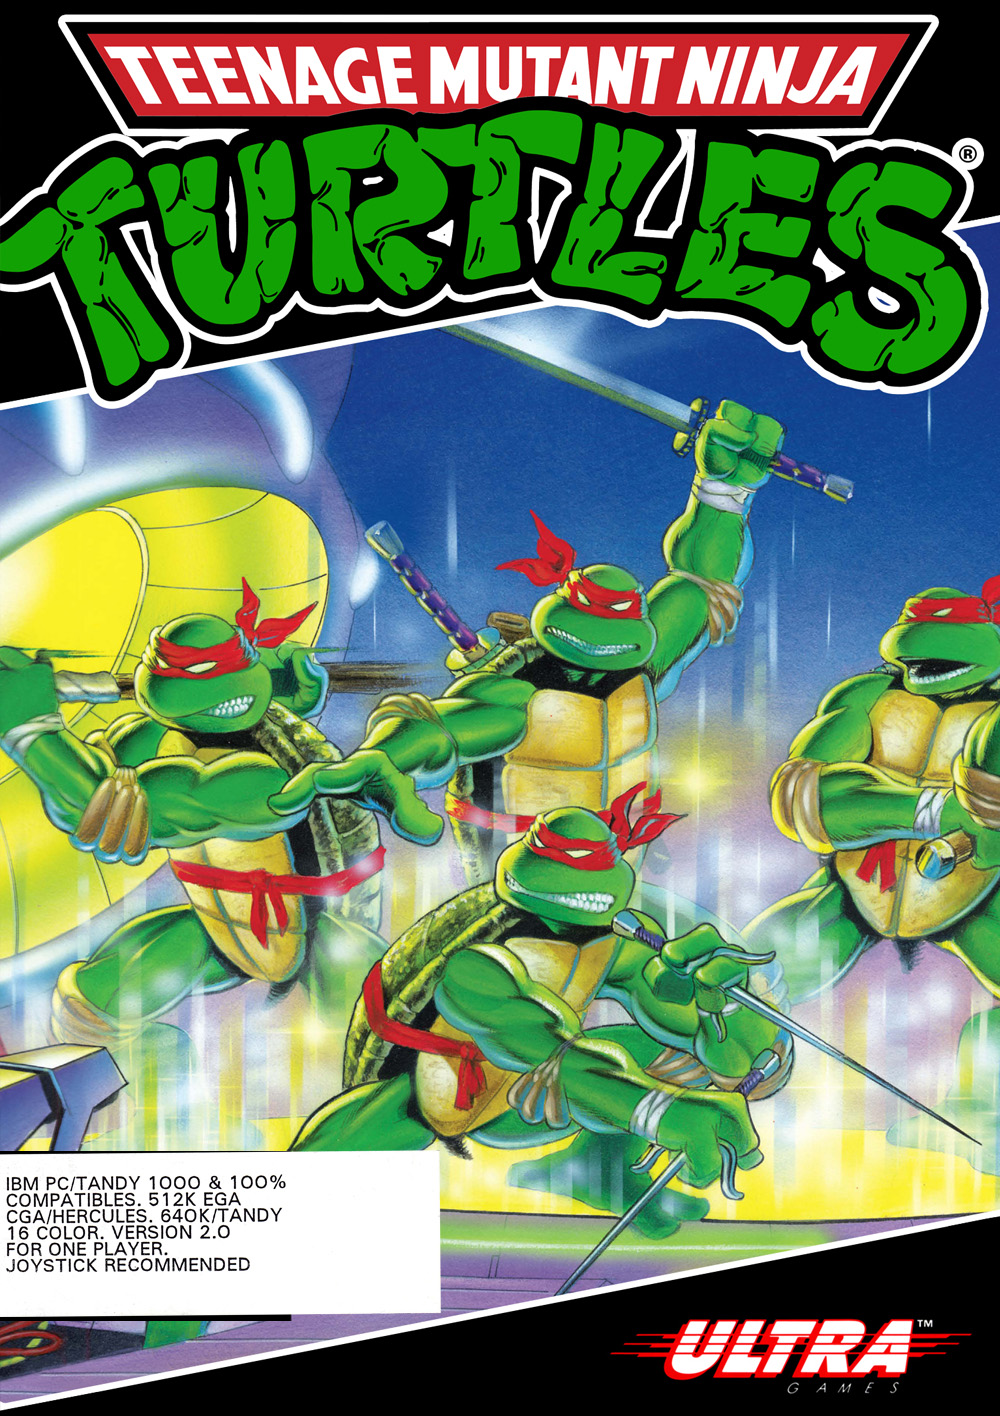 Ninja turtles pc game requires dongle kopfoot